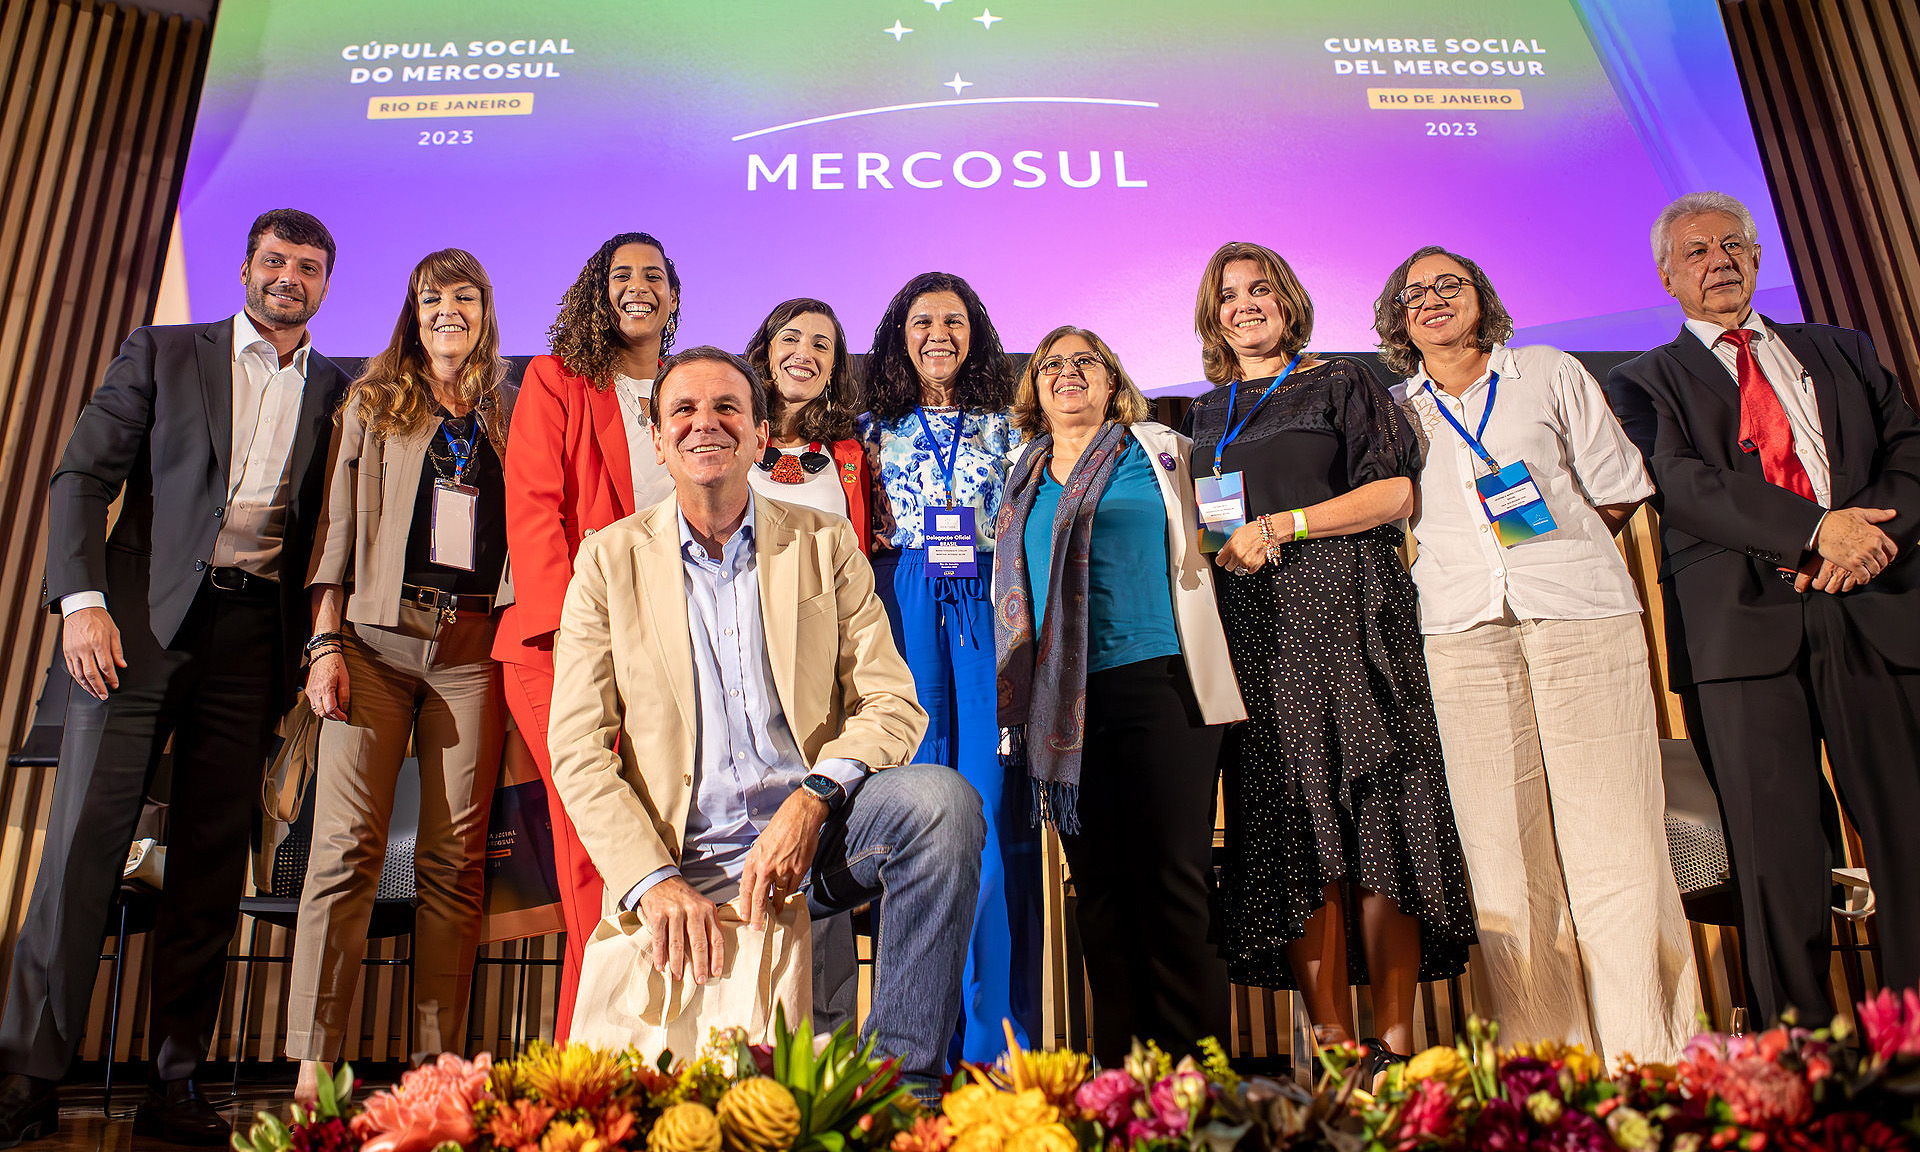 Cúpula Social do Mercosul é retomada após sete anos